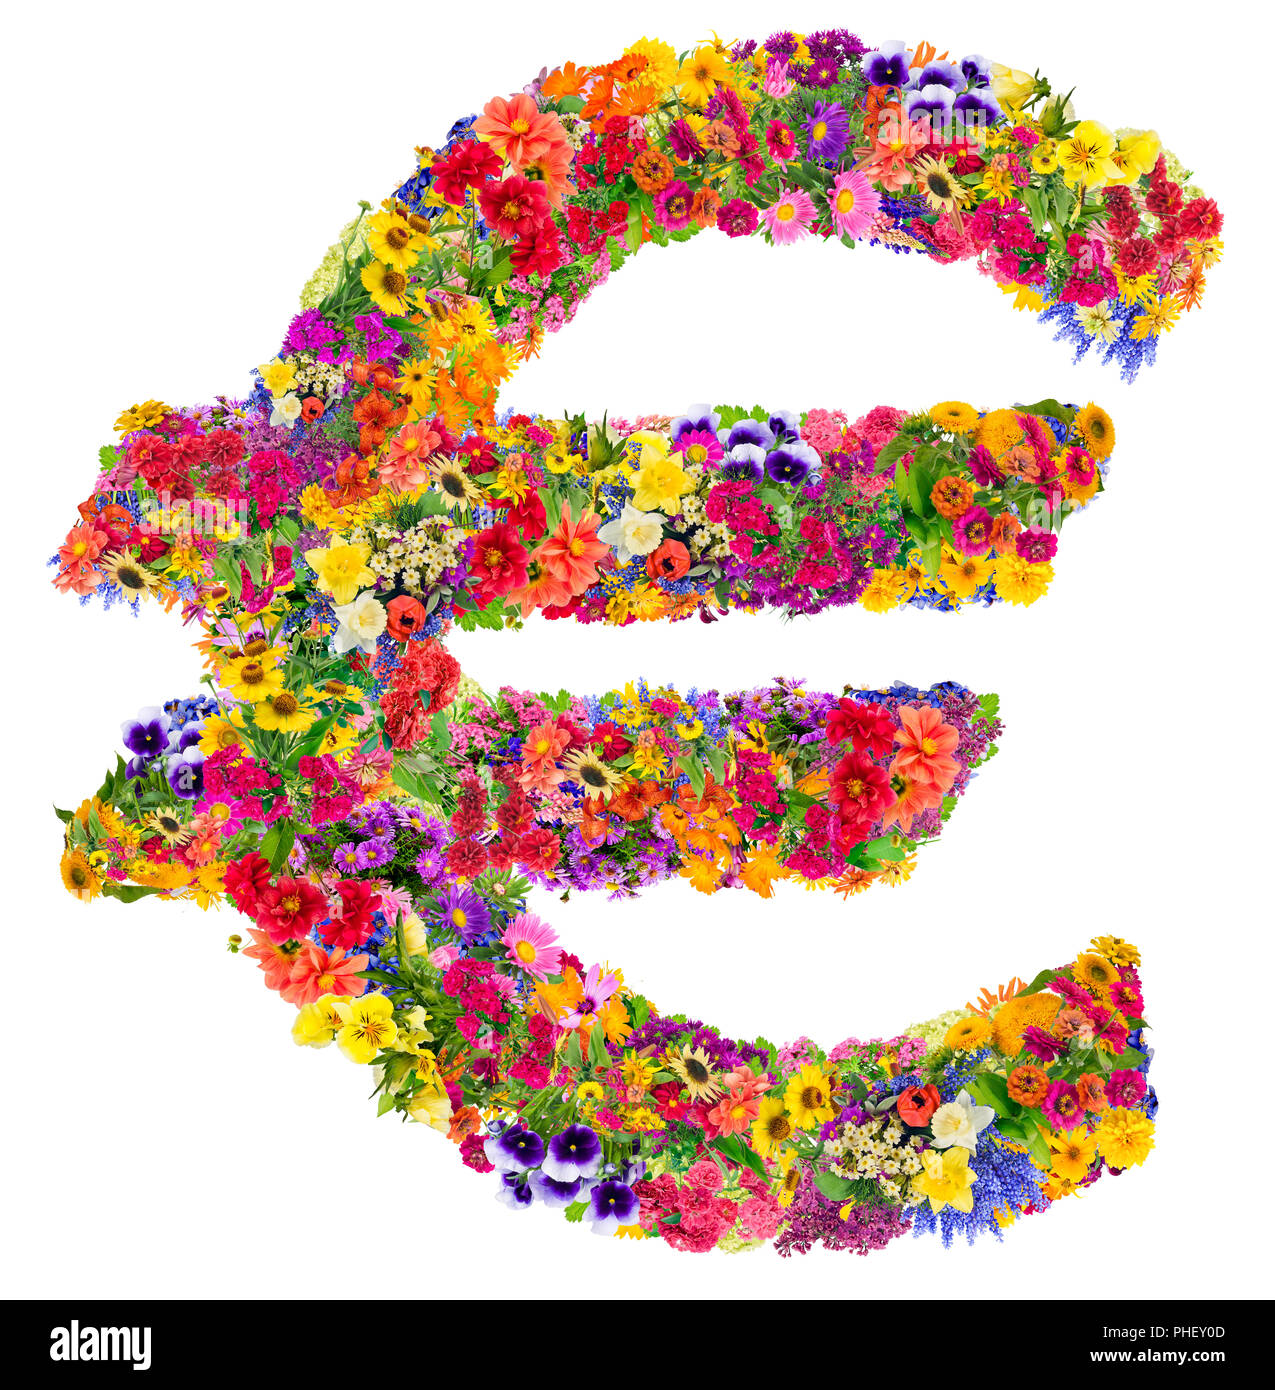 Symbole de l'euro à partir de fleurs d'été Banque D'Images